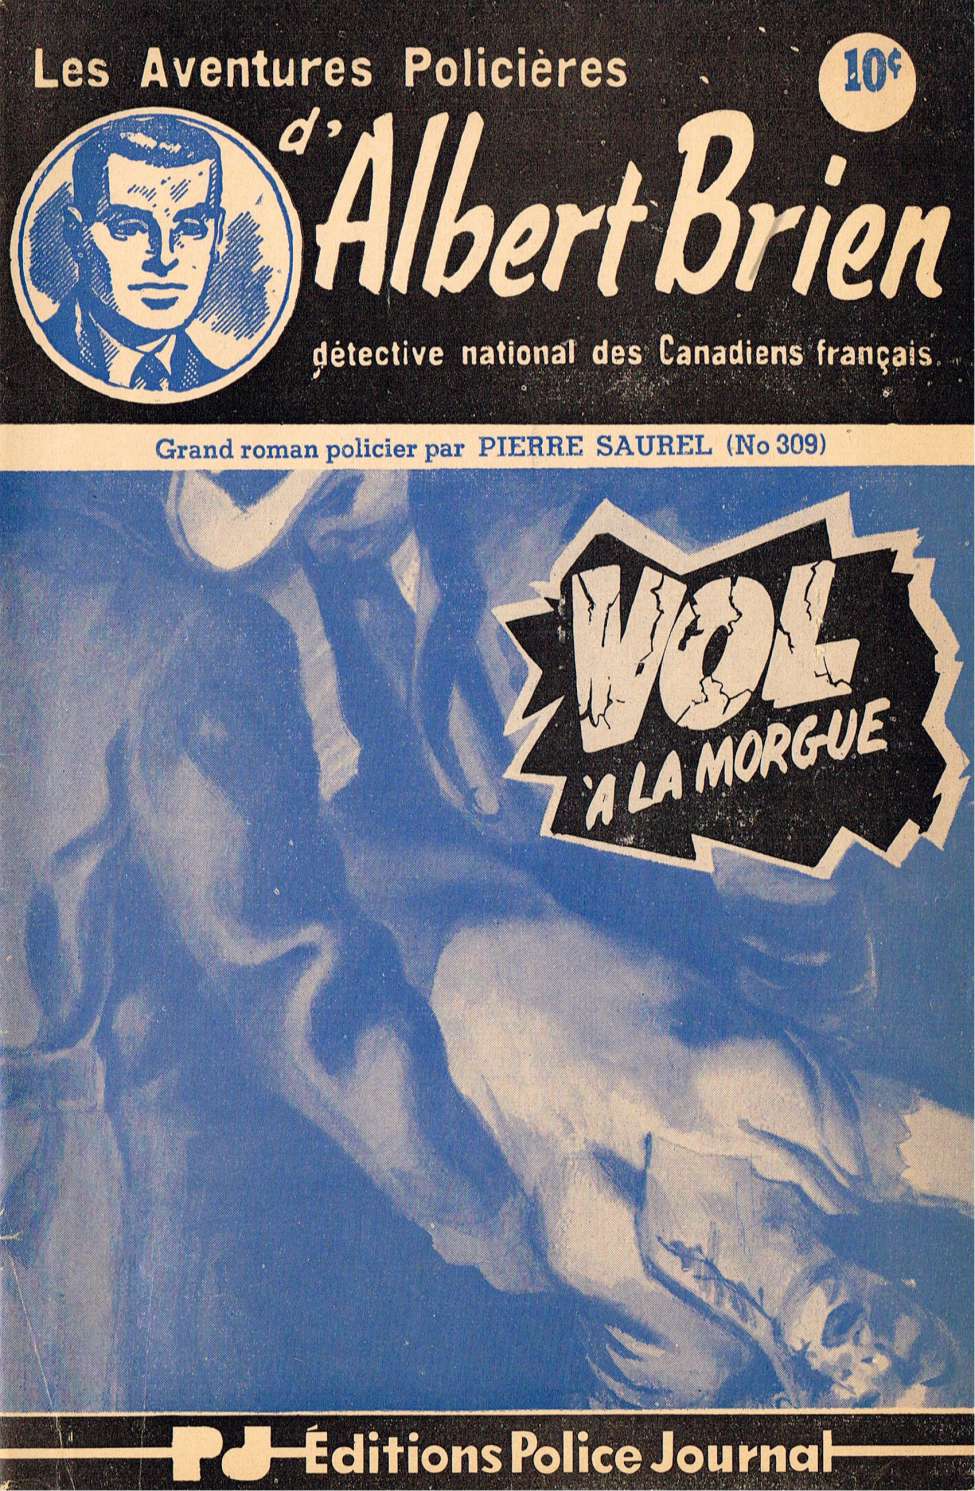 Book Cover For Albert Brien v2 309 - Vol à la morgue